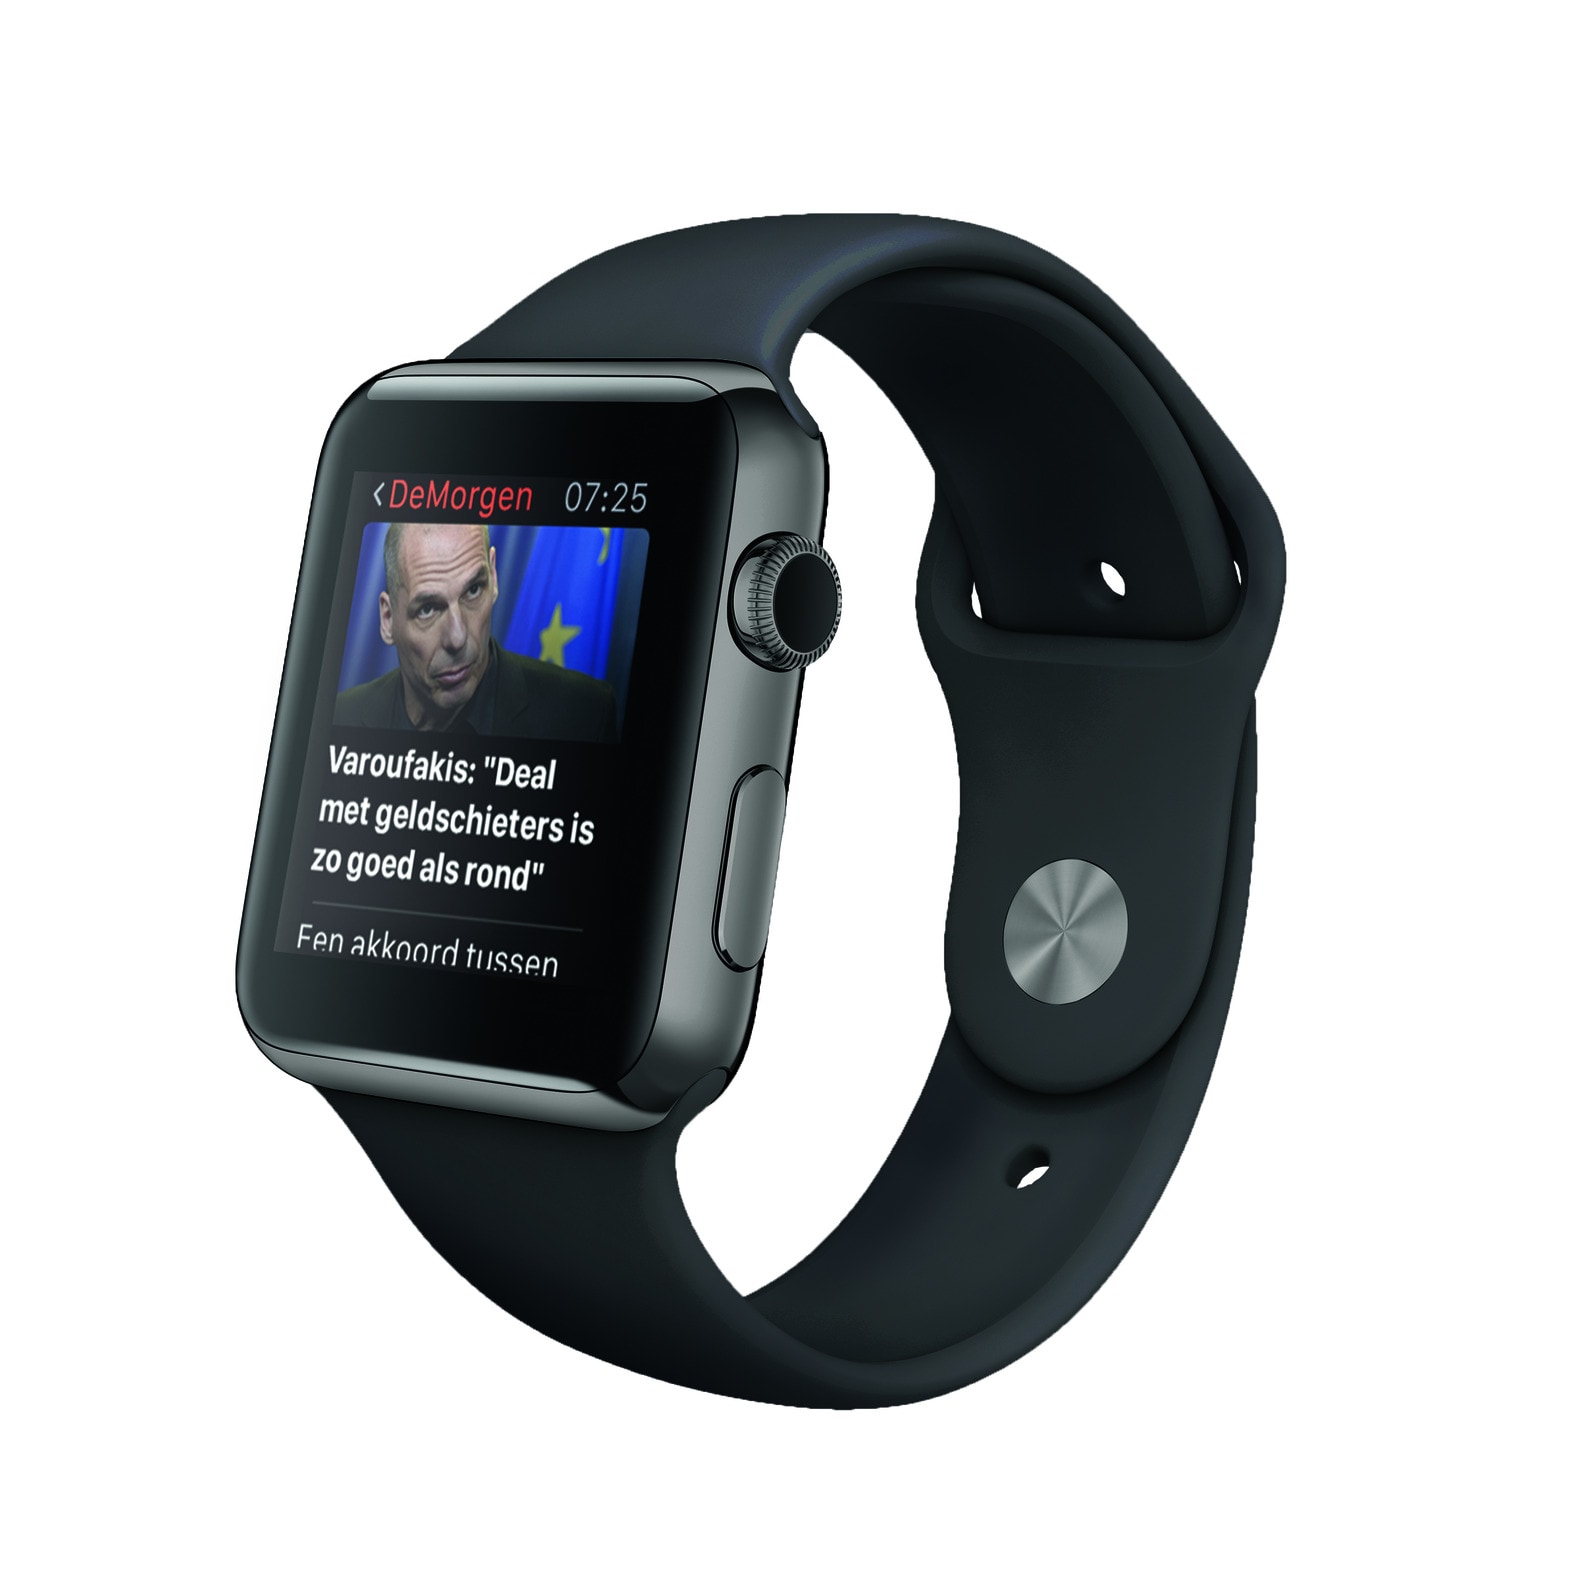 Vernieuwde De Morgen-app nu ook voor Apple Watch